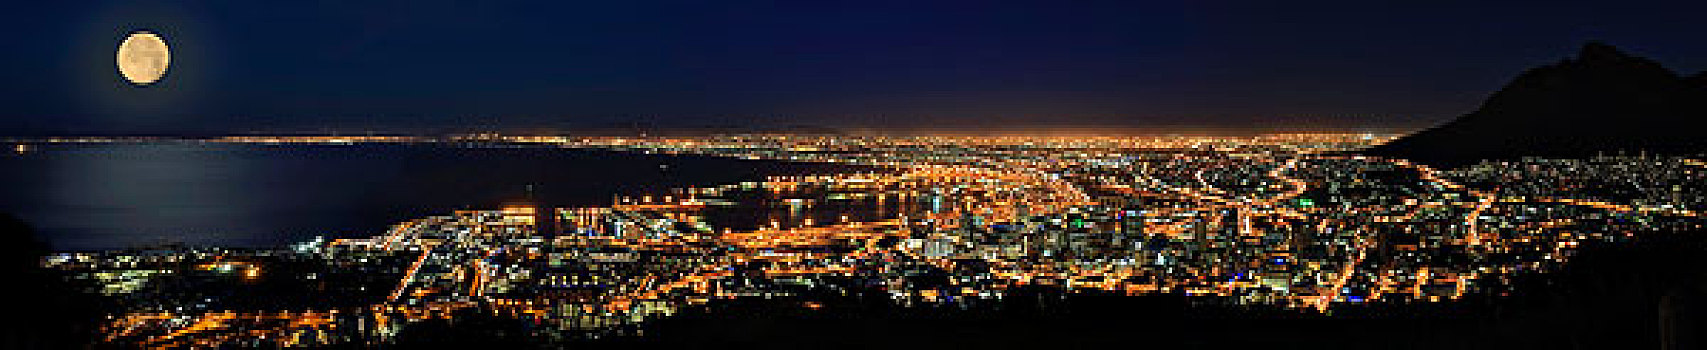 城镇,夜晚,满月,南非,非洲